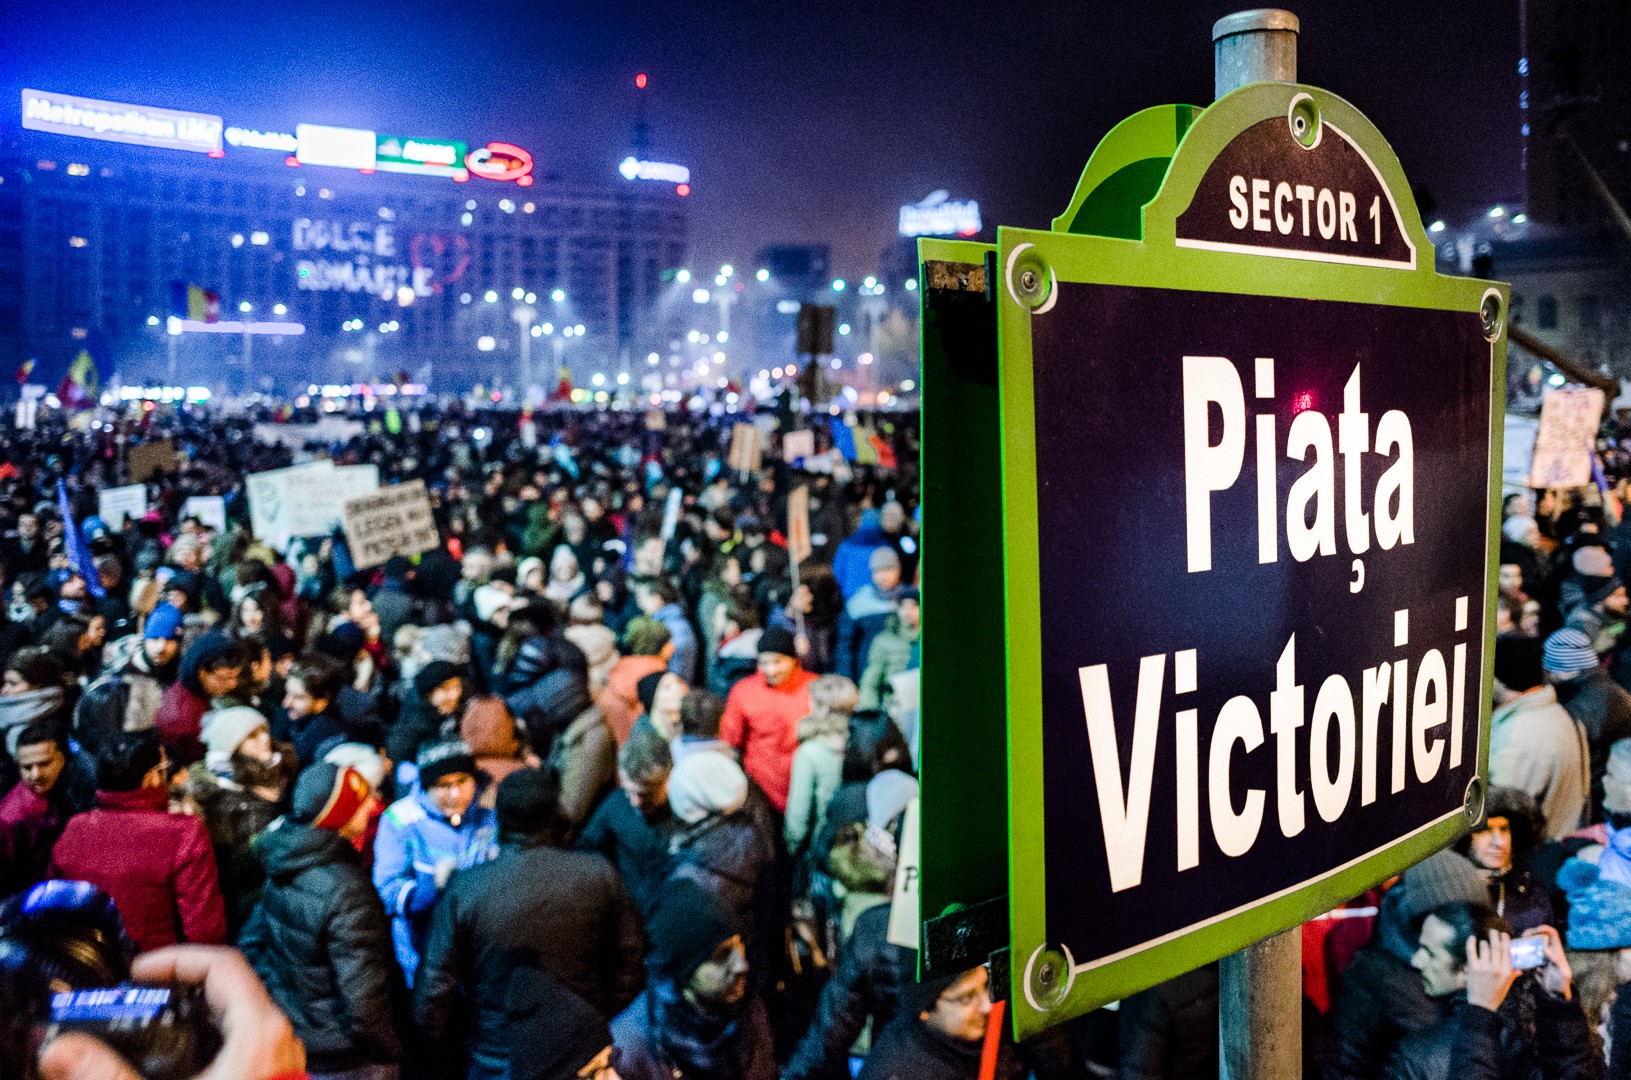 Protest anticoruptie - Piata Victoriei